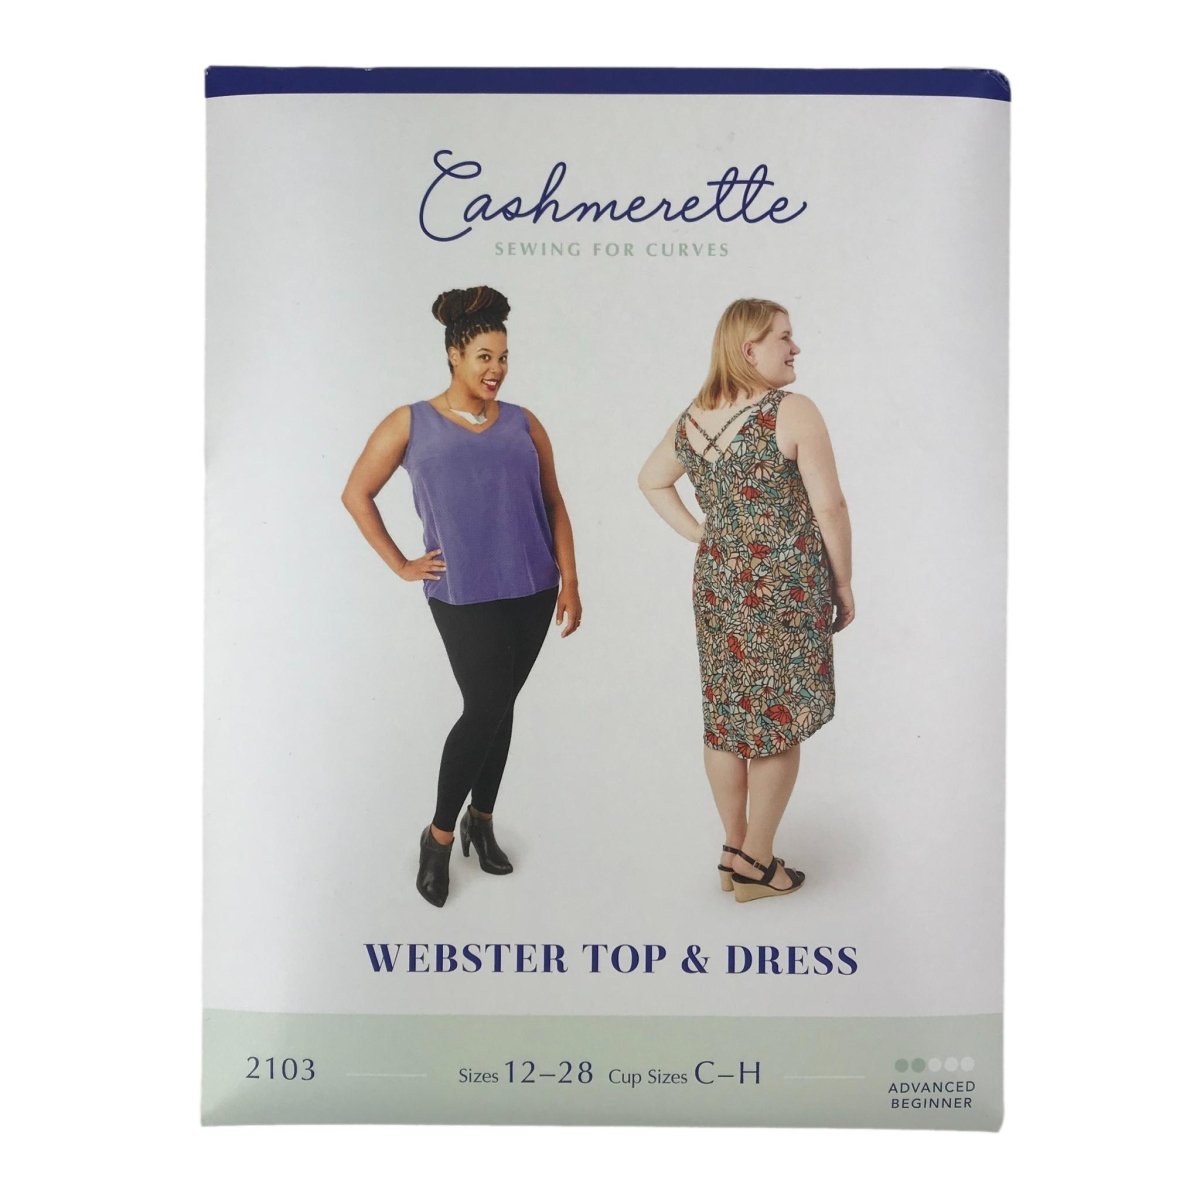 Cashmerette - Webster Top and Dress